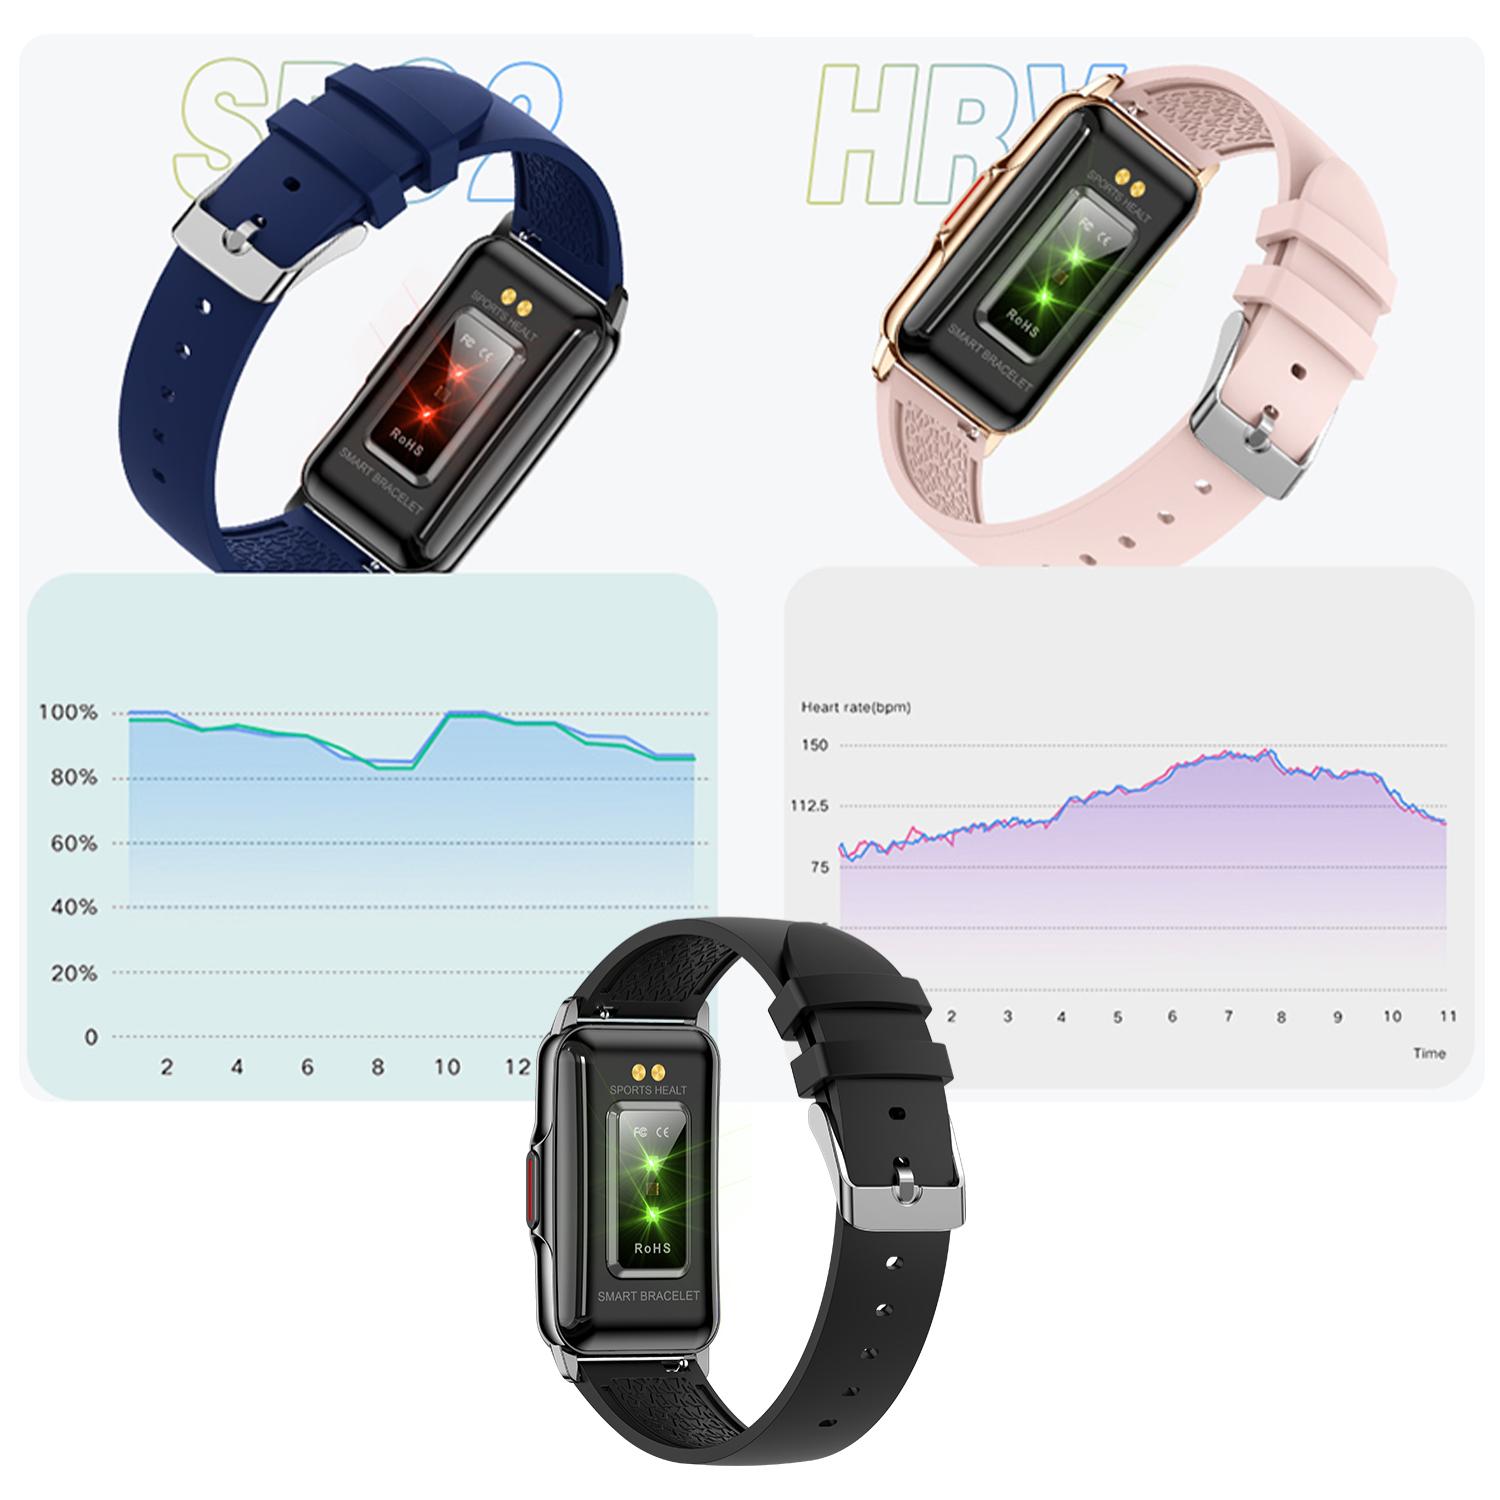 Smartwatch H80 con 20 modos deportivos. Monitor cardiaco, de tensión y oxígeno en sangre. Correa metálica.